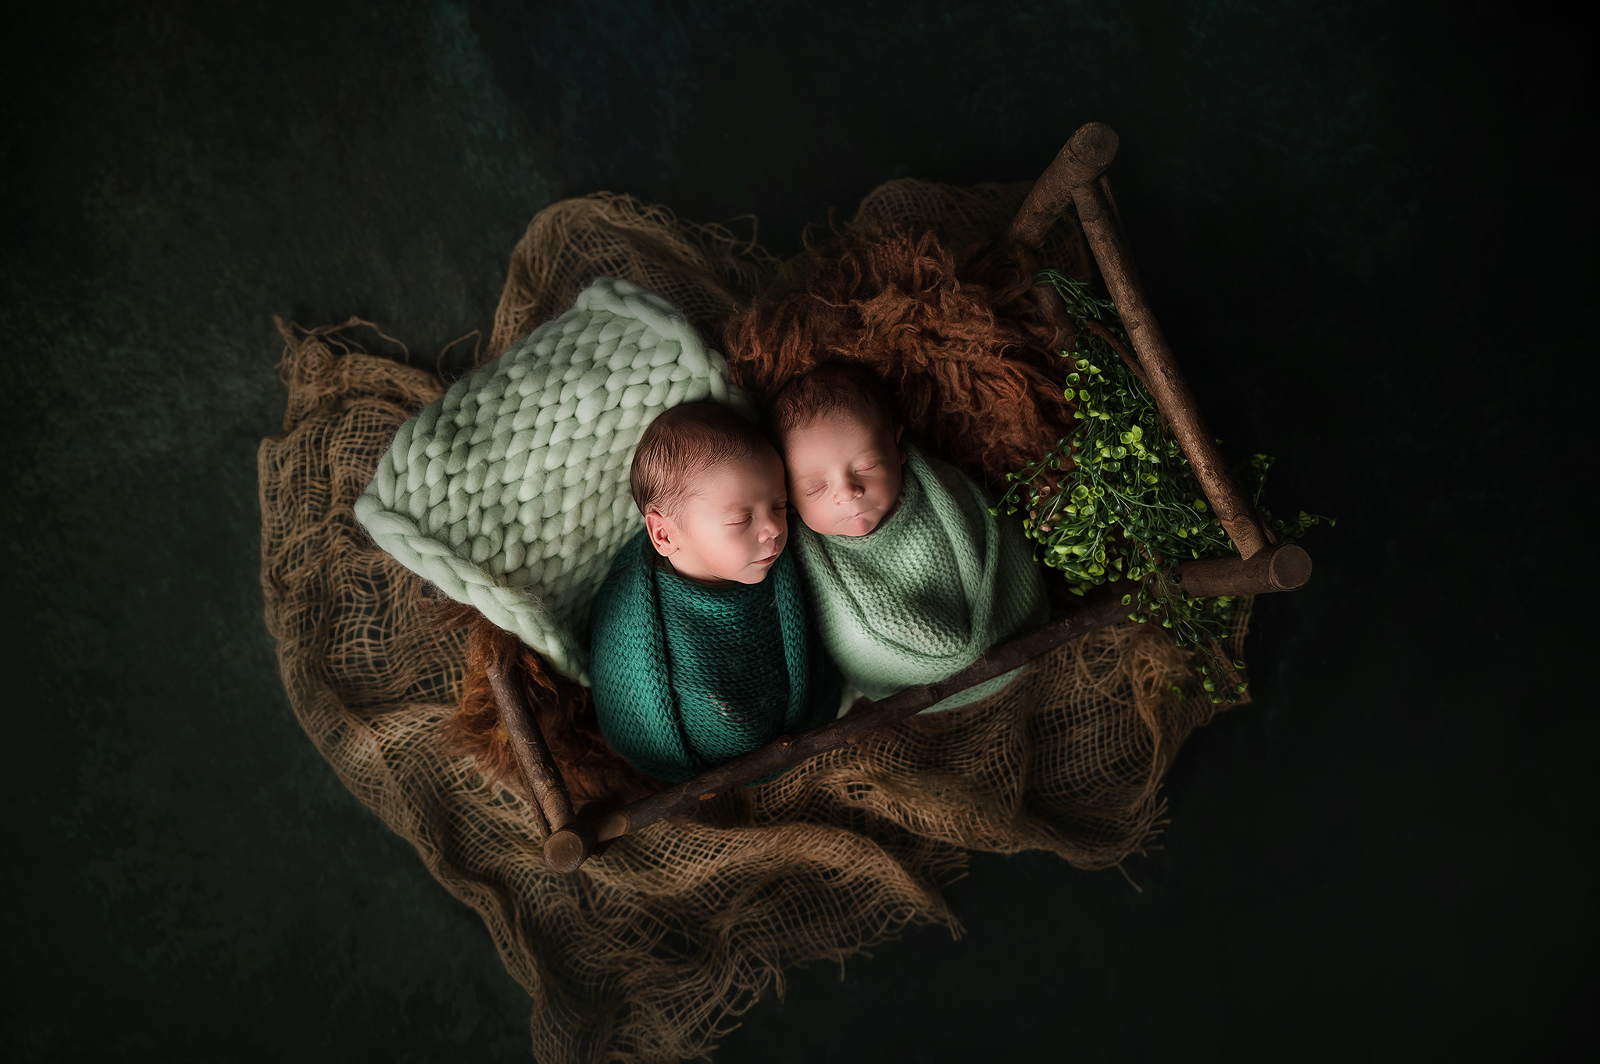 Shooting photo bébé - nouveau-né jumeaux - Fine Art - Photographe Esneux, Liège Belgique - Newborn Photography - Petite Snorkys Photography, 2022